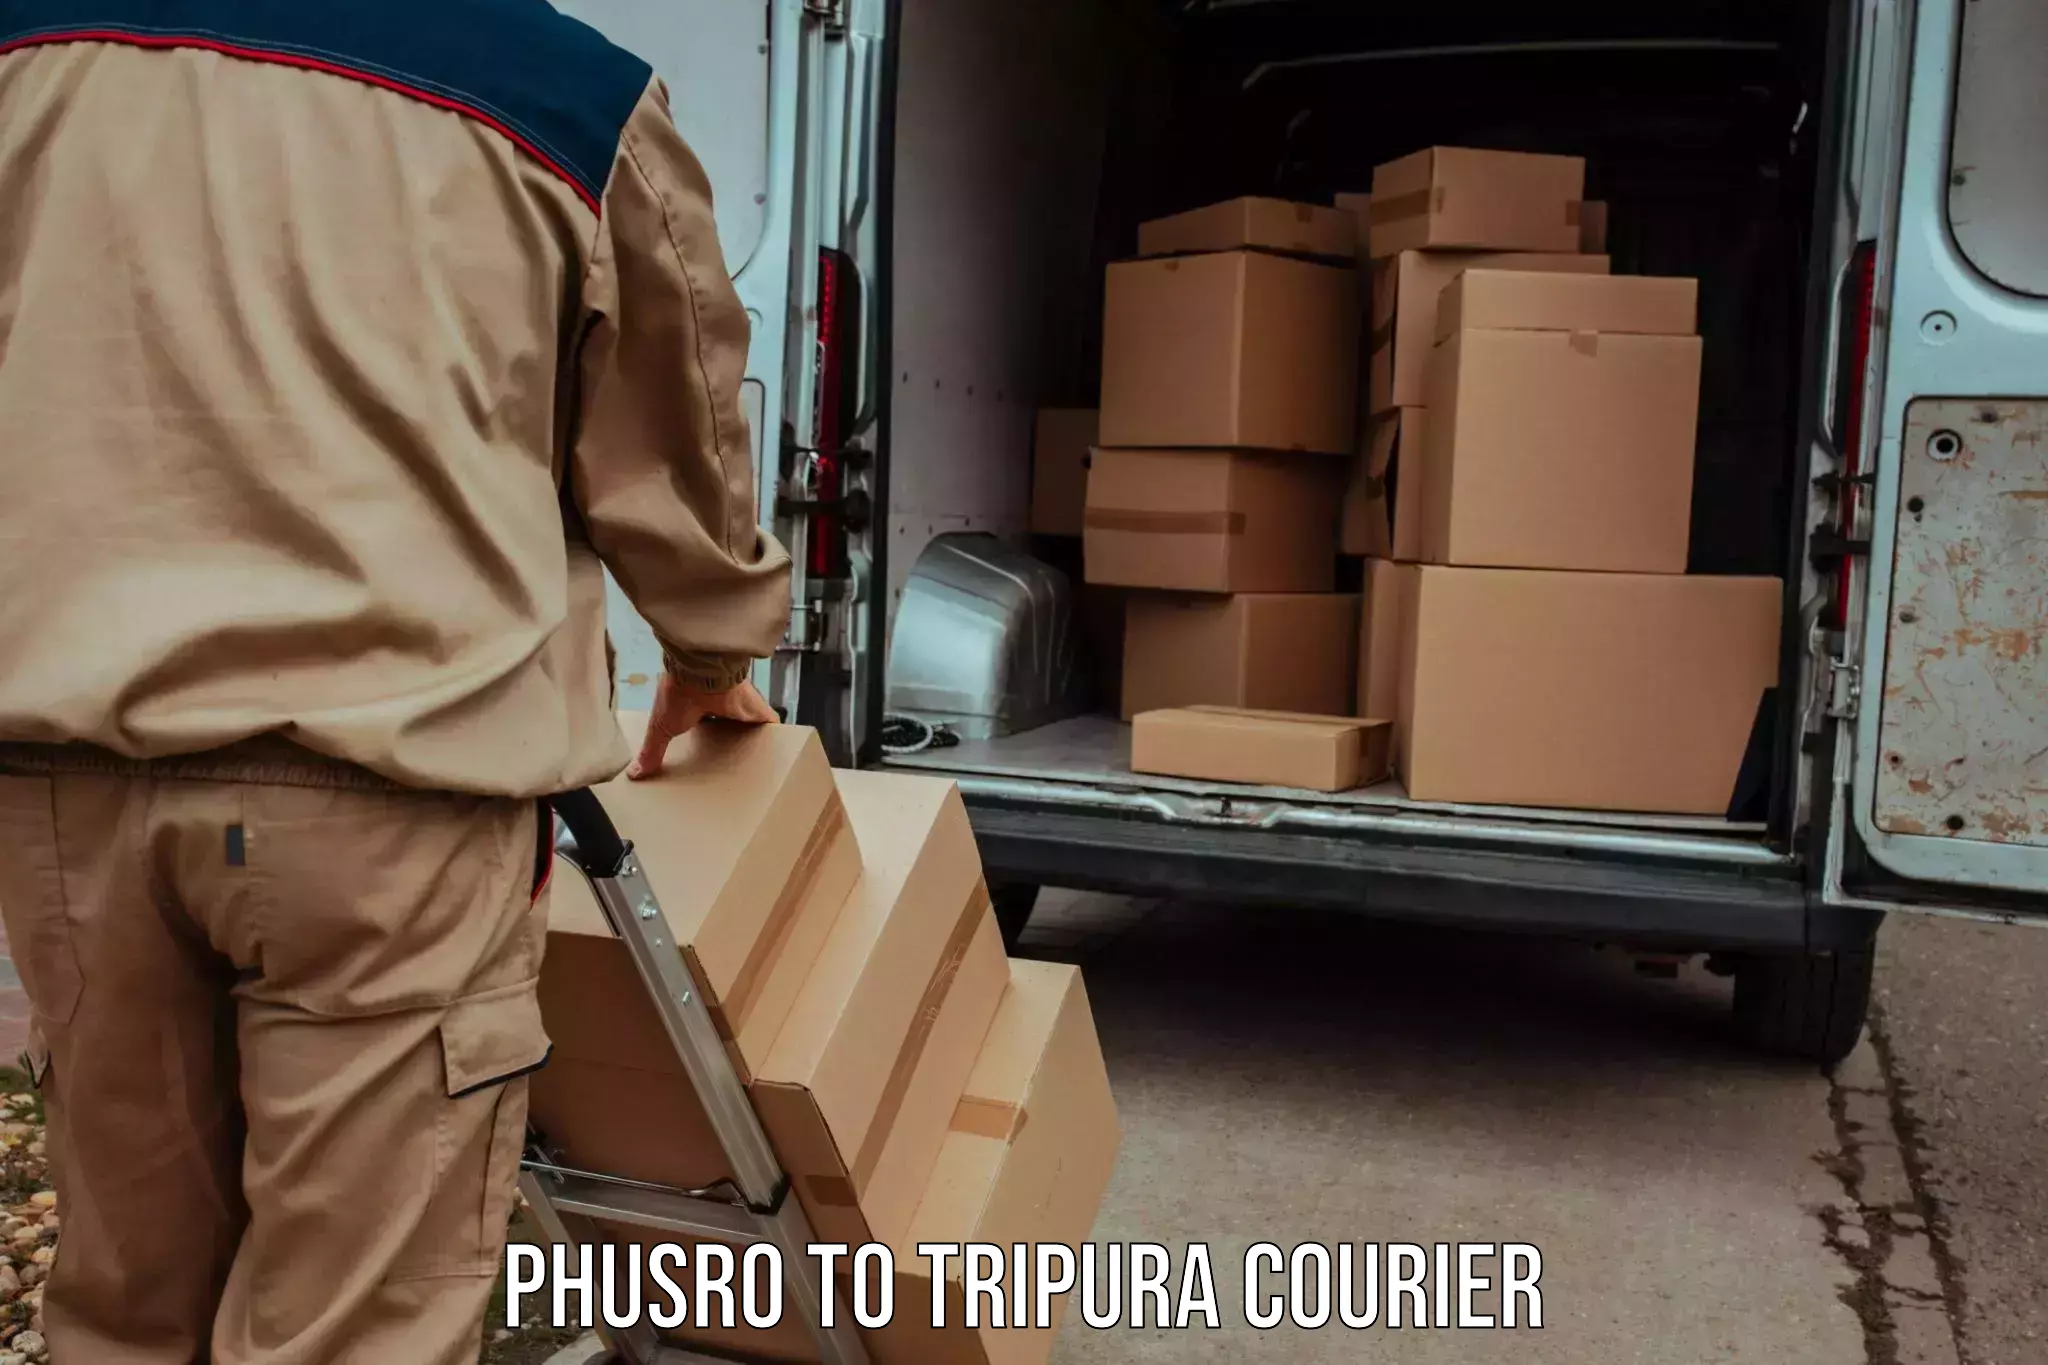 Express postal services Phusro to Tripura